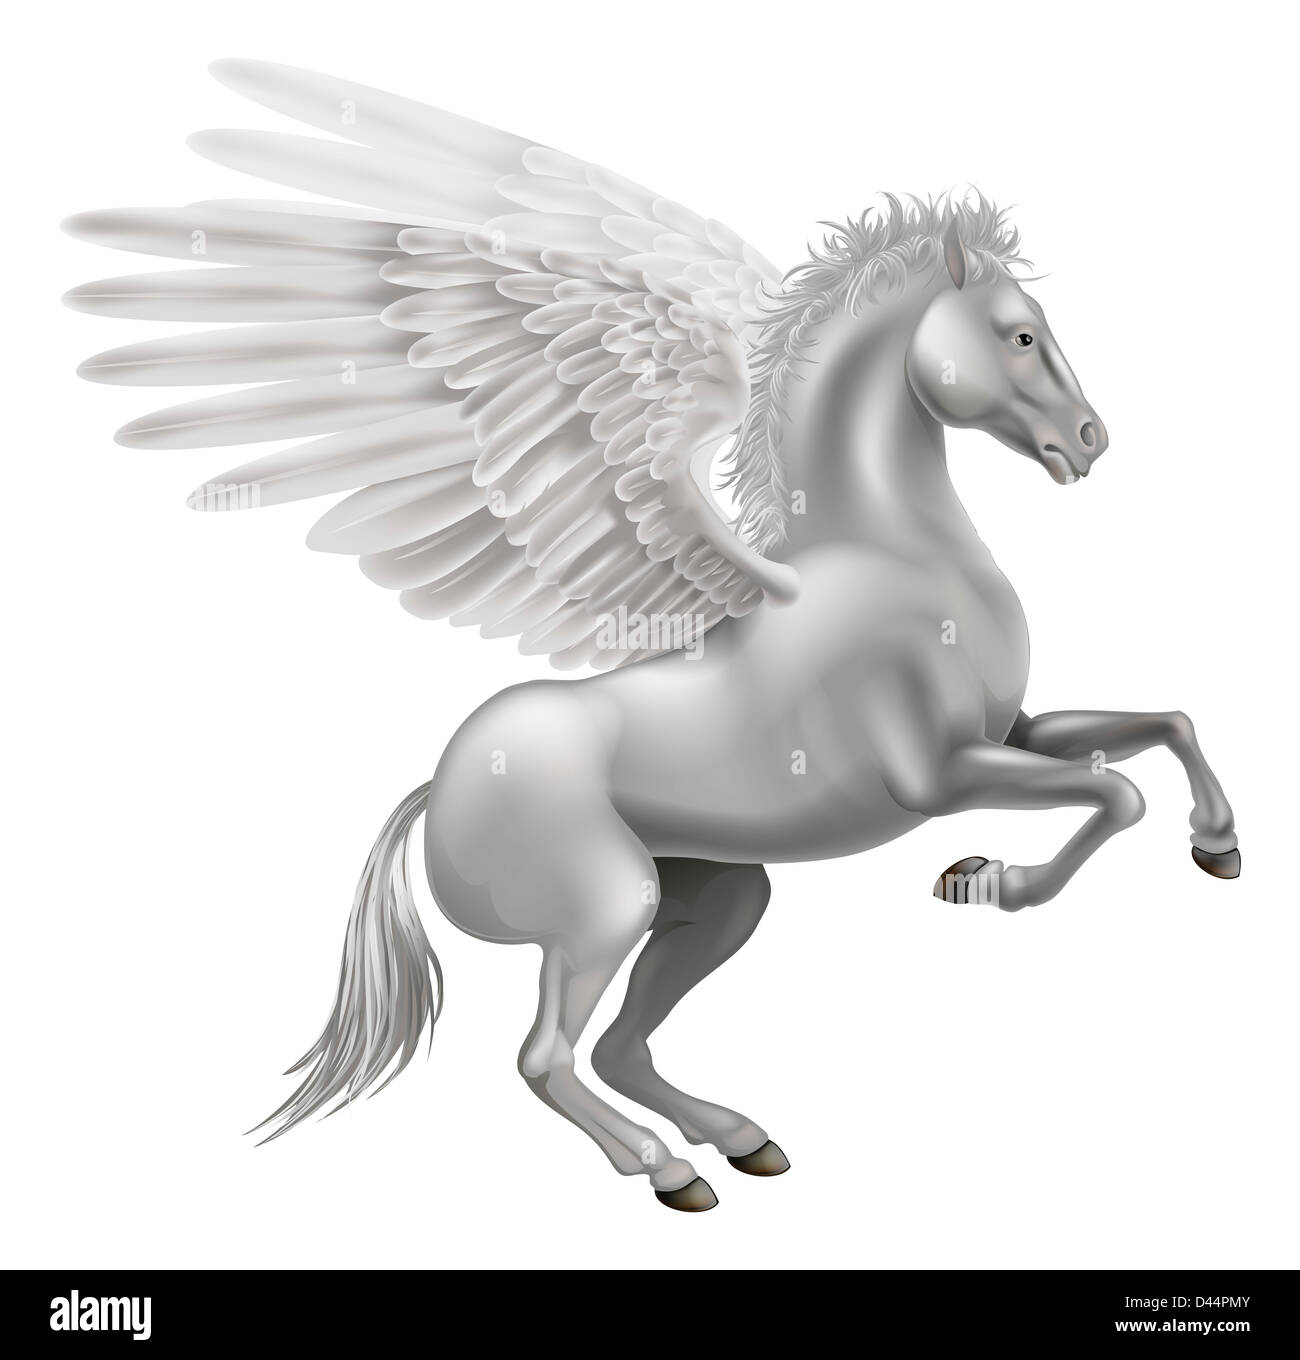 Illustration of the legendary winged horse from Greek mythology, Pegasus Stock Photo